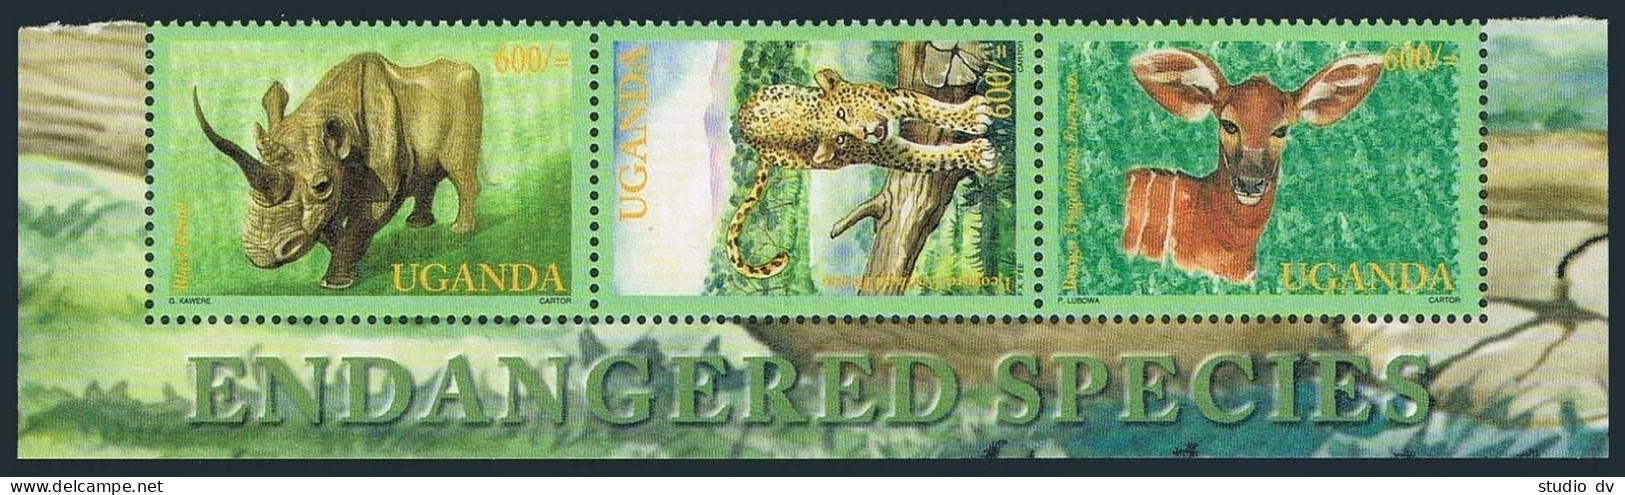 Uganda 1691 Ac Strip,1693,MNH. Wild Mammals 2001.Rhinoceros,Leopard,Gorillas. - Uganda (1962-...)